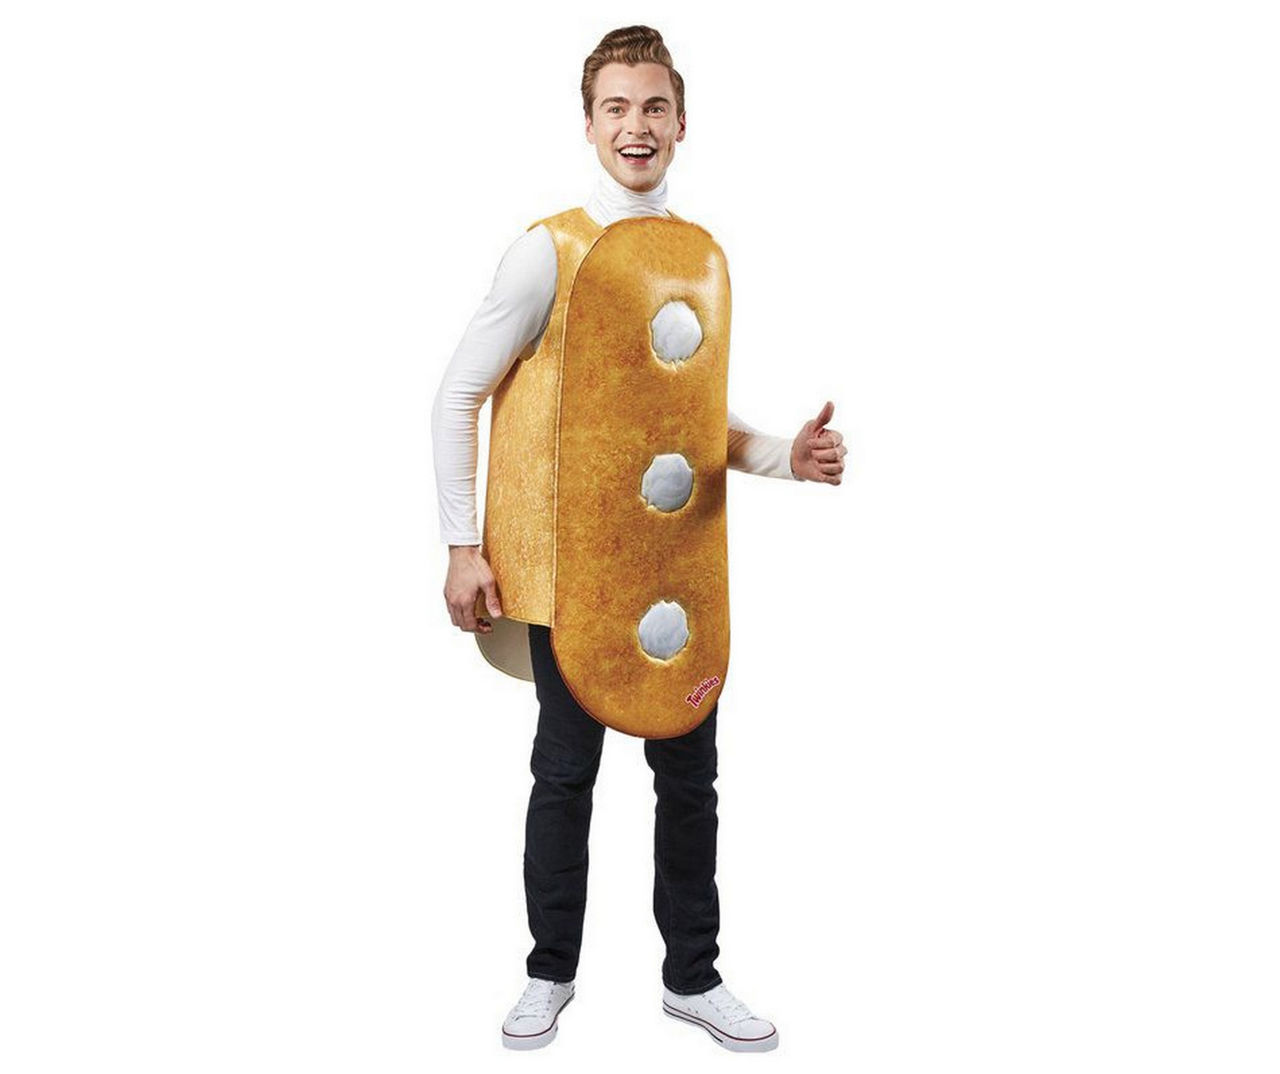 Adult Hostess Twinkie Costume